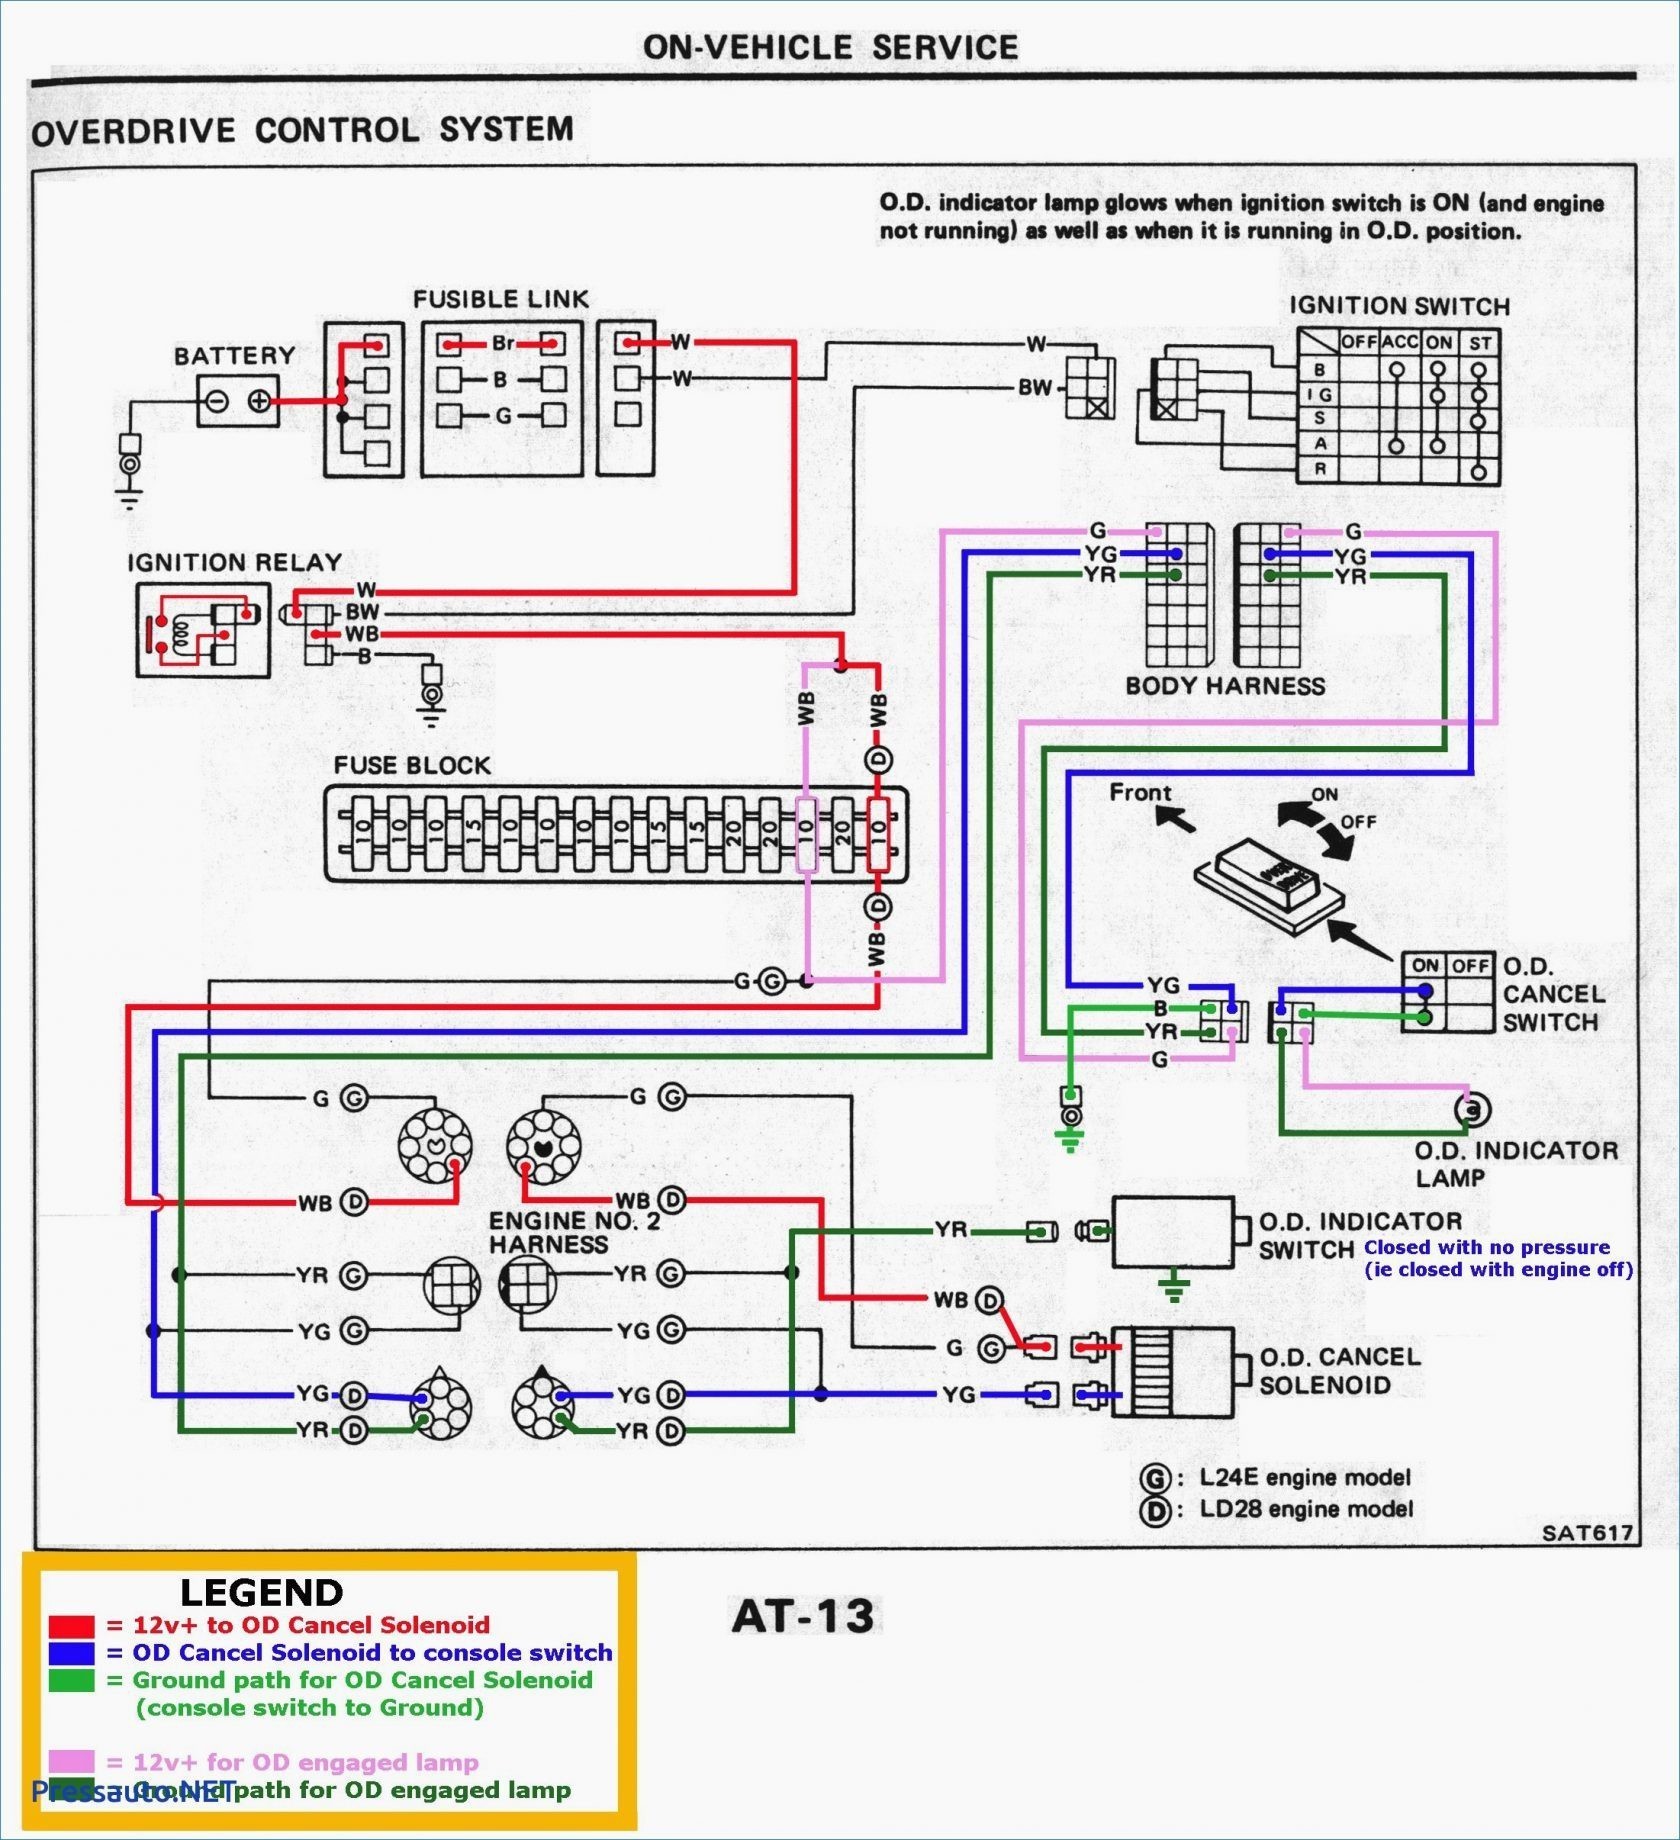 2002 Hyundai Accent Engine Diagram Wiring Diagram 2003 Kia sorento Wiring Diagram Datasource Of 2002 Hyundai Accent Engine Diagram